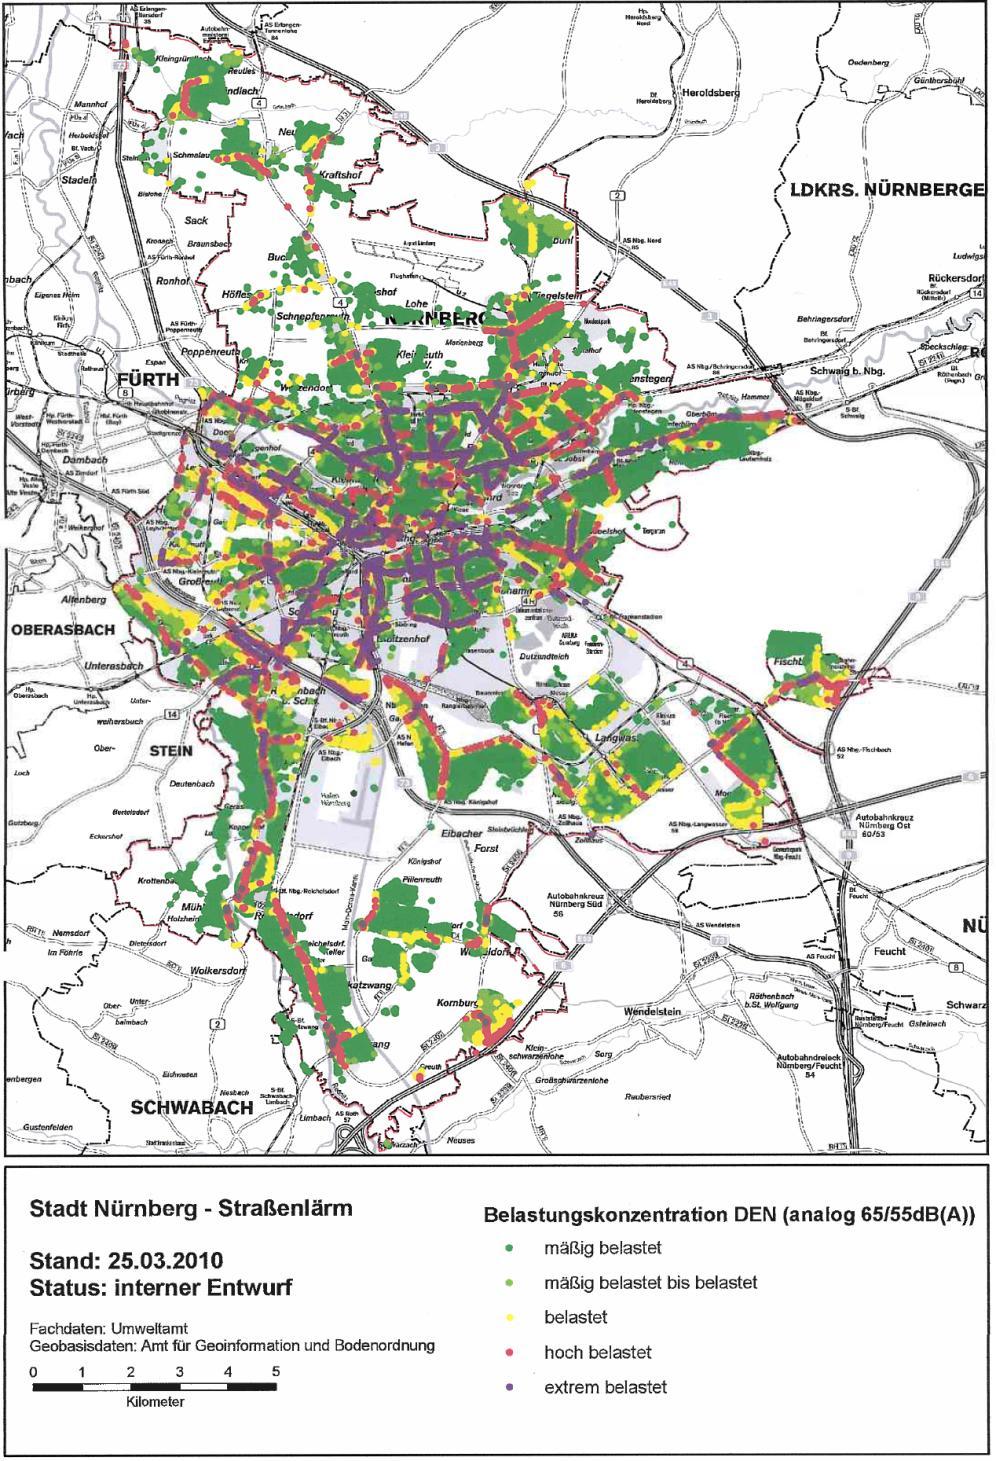 Auswirkungen Kfz-Verkehr» Luft- und Lärmbelastung überschreitet an vielen Stellen in der Stadt die zulässigen Grenzwerte» Betroffen